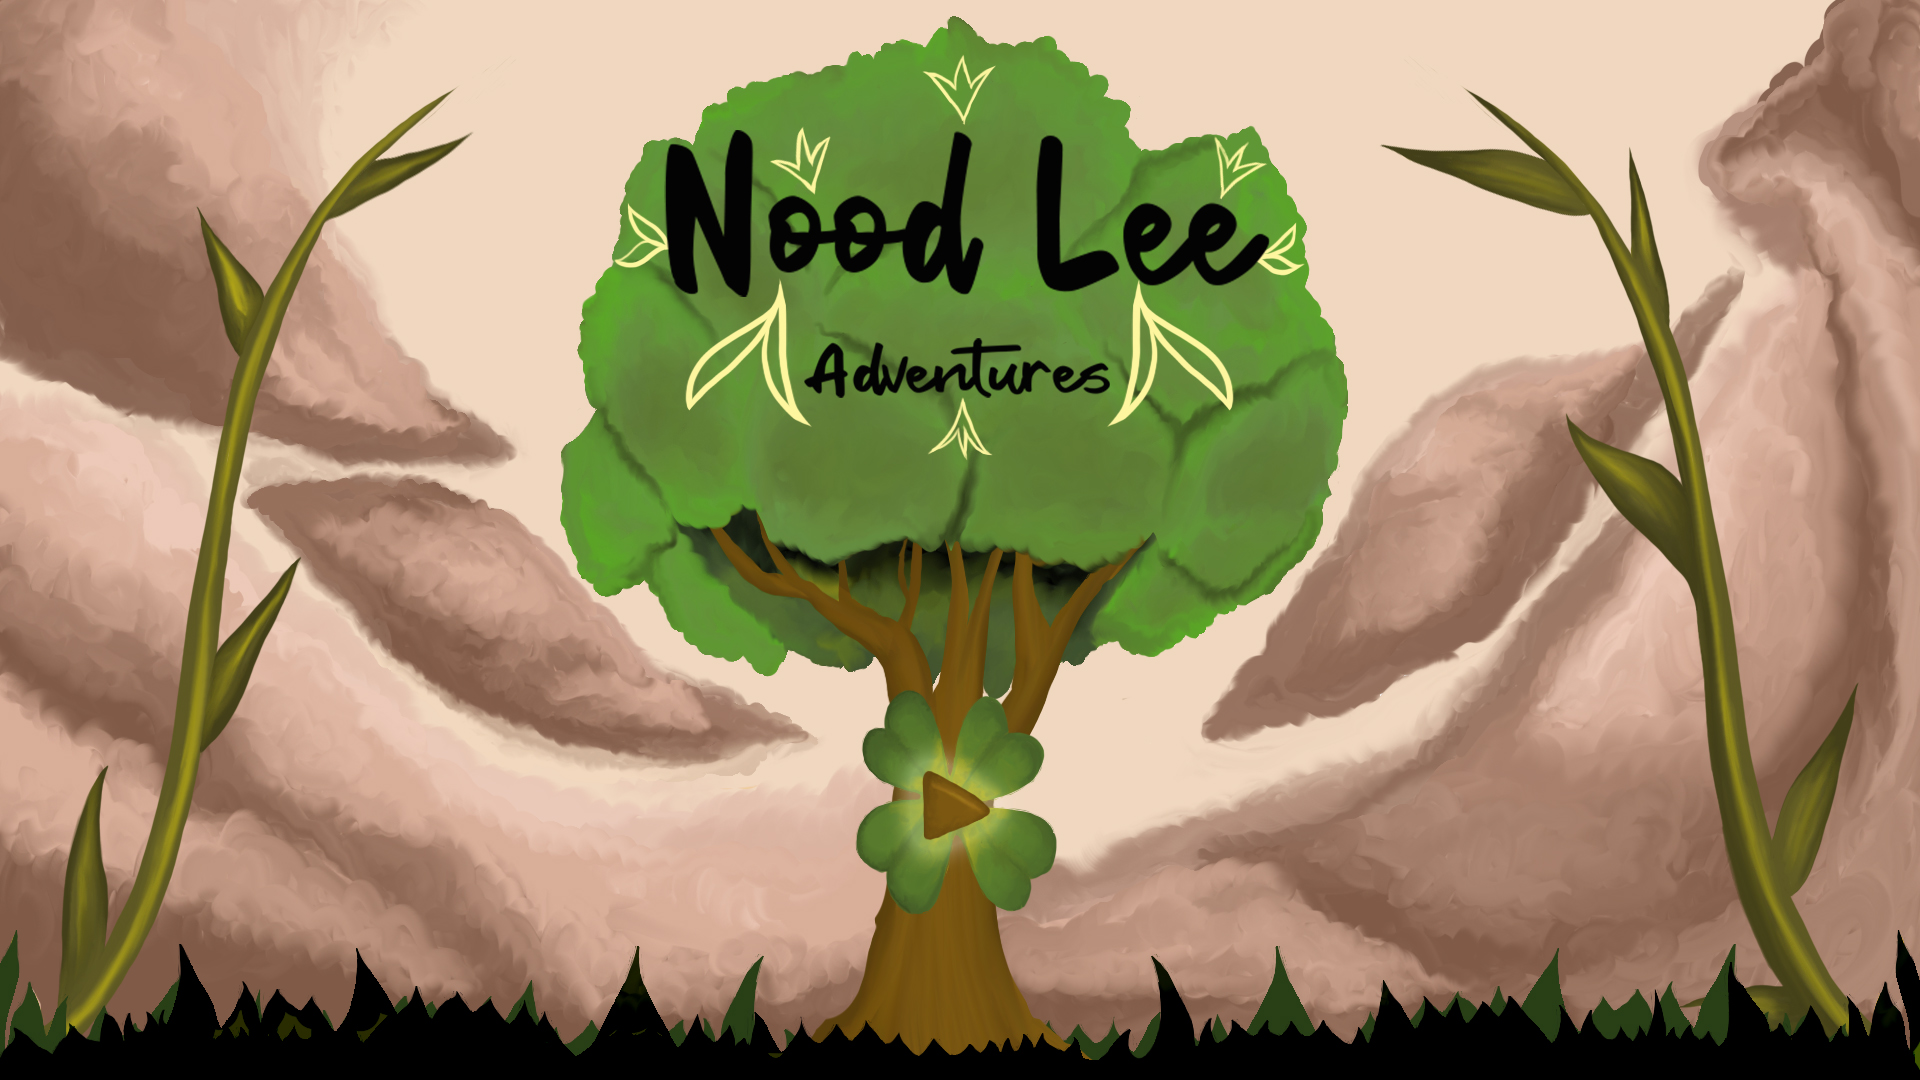 Nood Lee Adventures